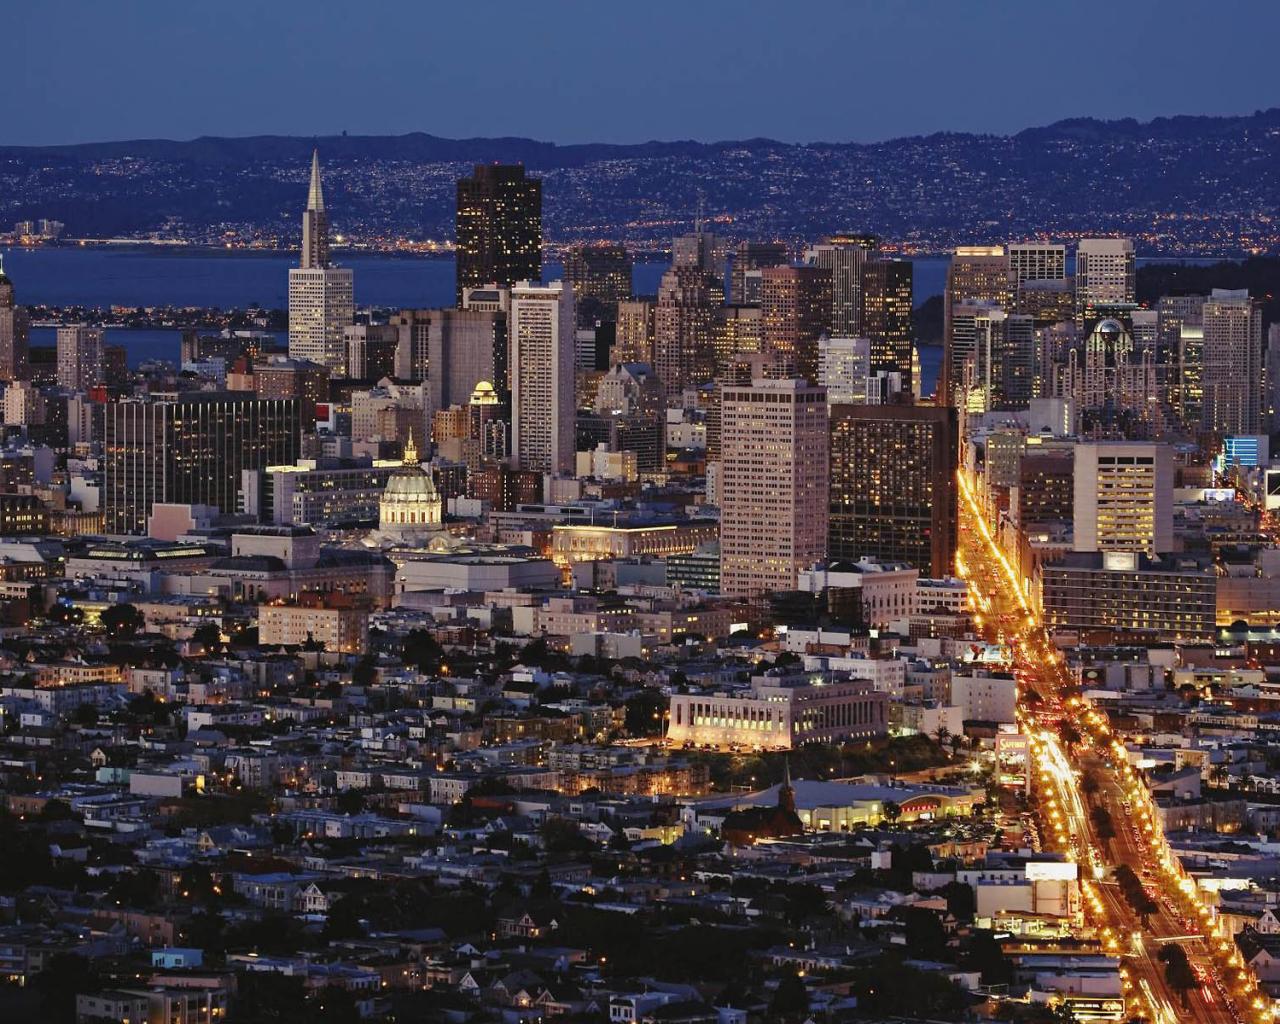 San-Francisco 1280 x 1024 postcard, San-Francisco 1280 x 1024 wallpaper